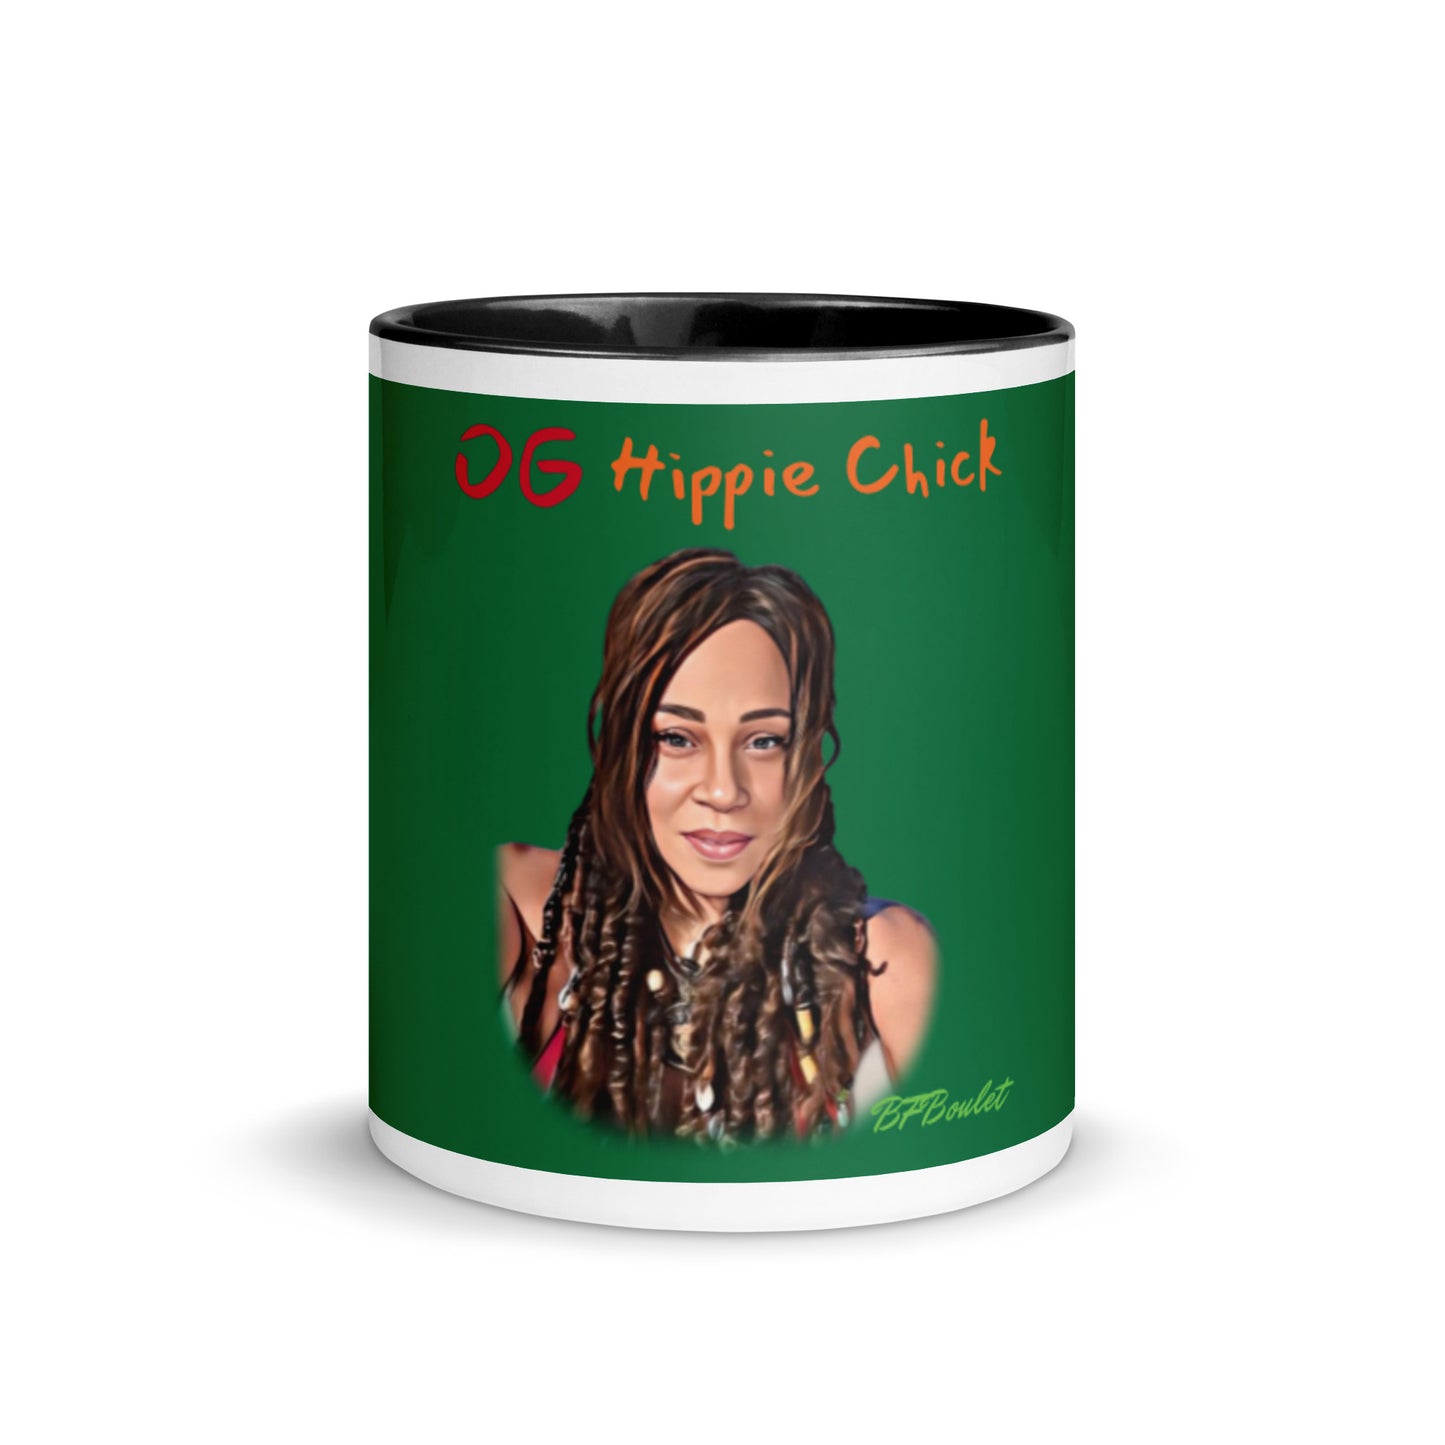 Jewel Color Mug - OG Hippie Chick (BFBoulet)